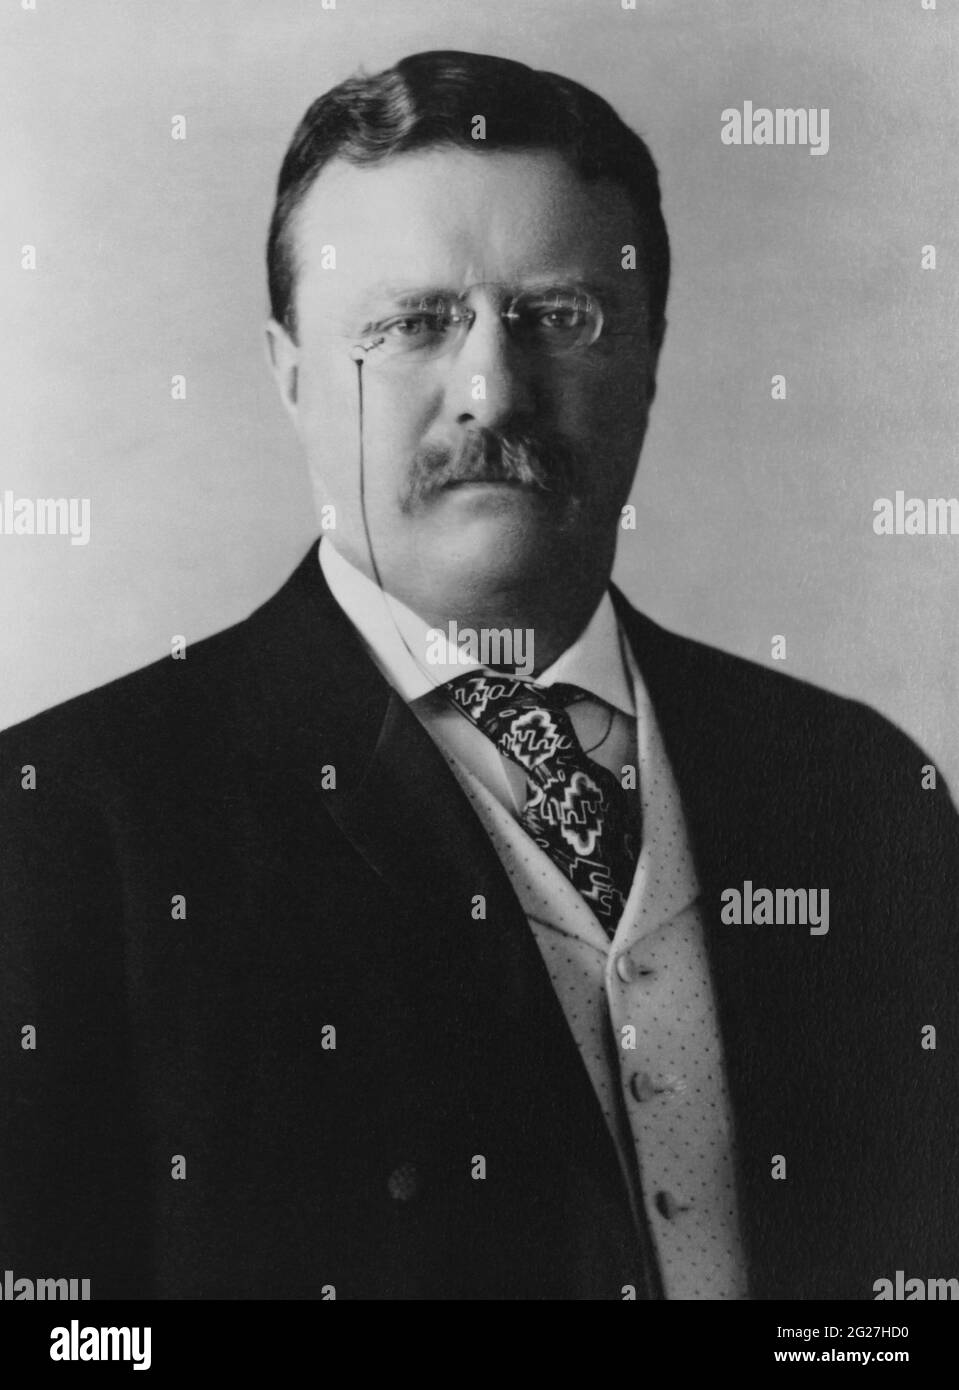 Retrato de Theodore Roosevelt, Presidente de los Estados Unidos en 26th. Foto de stock